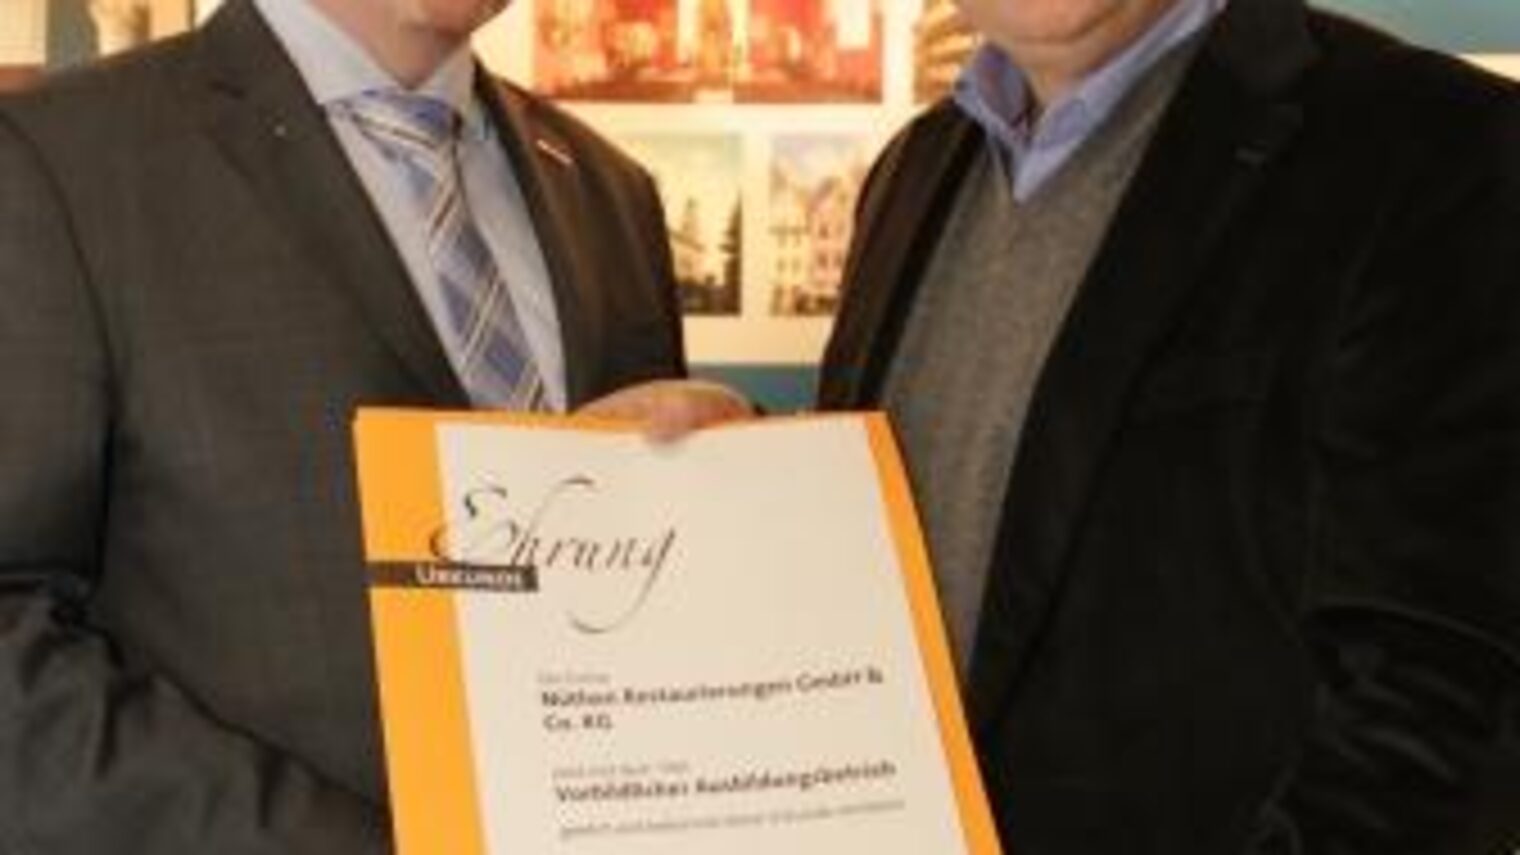 Arnd Künnecke nahm die Urkunde "Vorbildlicher Ausbildungsbetrieb" von Vizepräsident Thomas Erdmann entgegen.